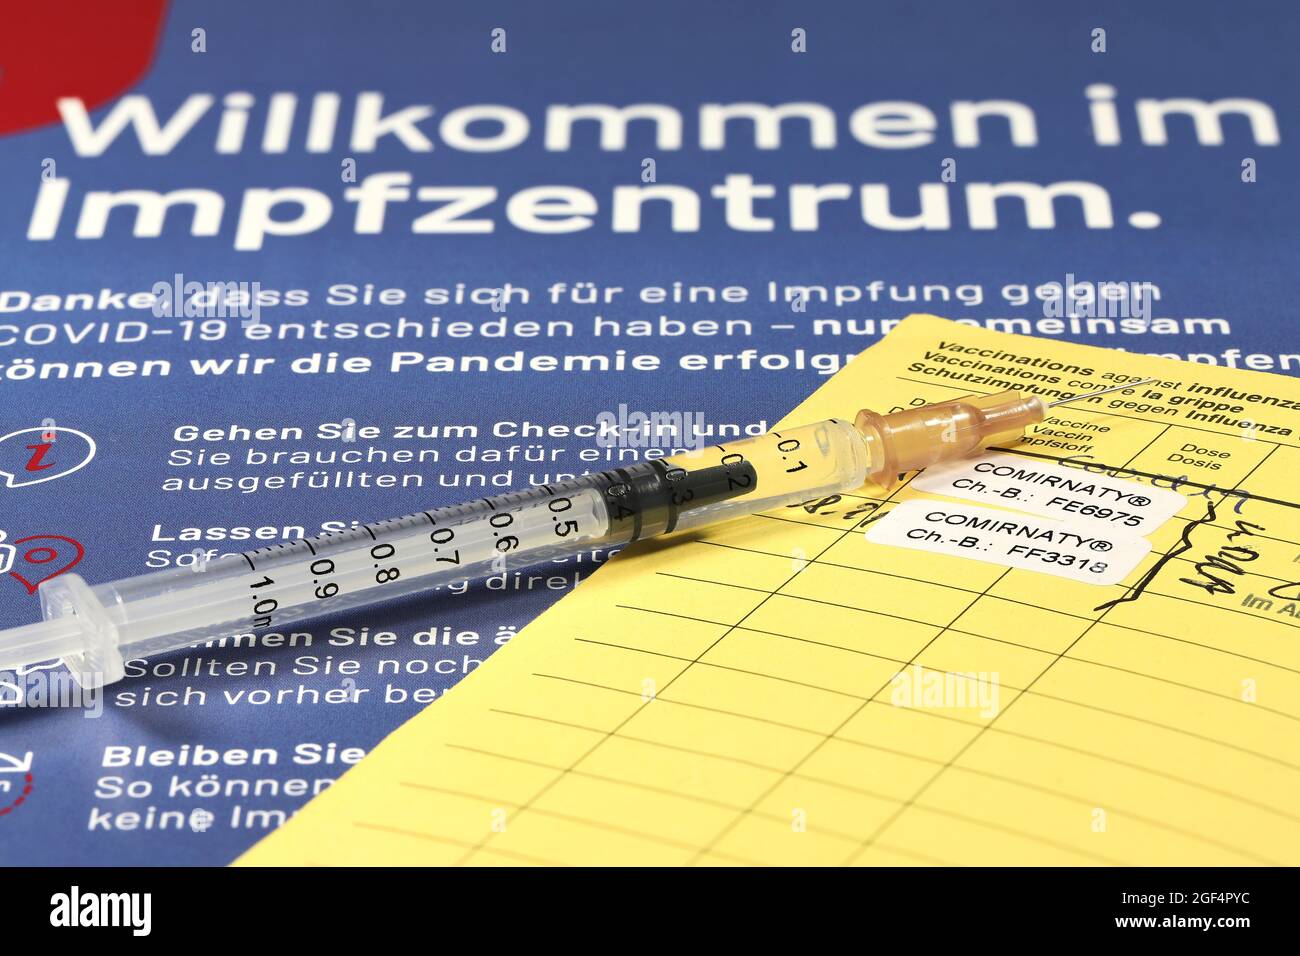 Documentación de la primera y segunda vacunación con la vacuna BioNTech/Pfizer COVID-19 Comirnaty administrada en un centro de vacunación alemán. Foto de stock